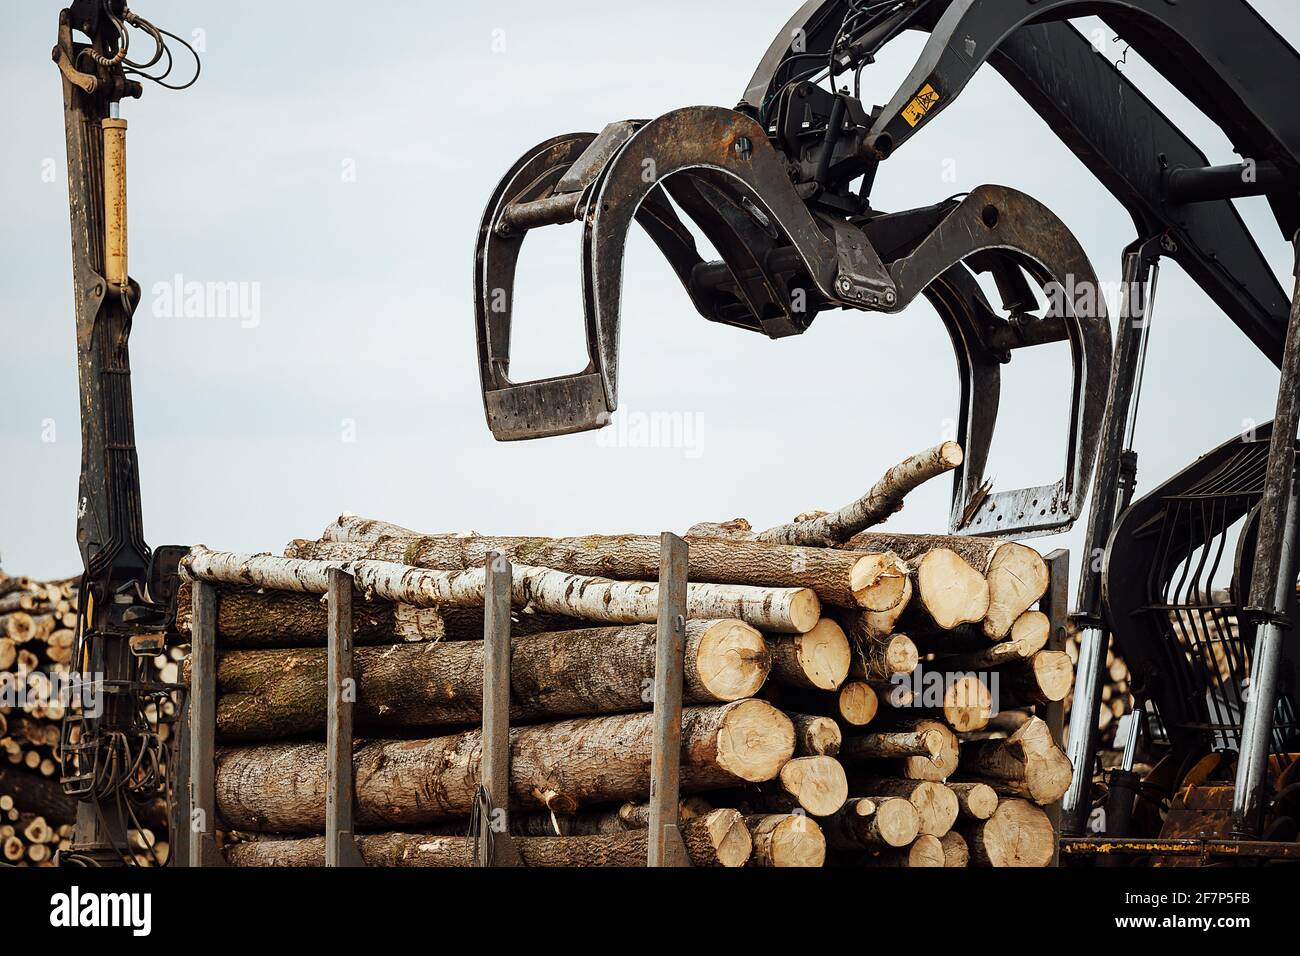 Der Frontlader arbeitet in einer Holzverarbeitungsanlage. Industriebagger  mit mechanischem Greifer transportiert Holz im Lager Stockfotografie - Alamy